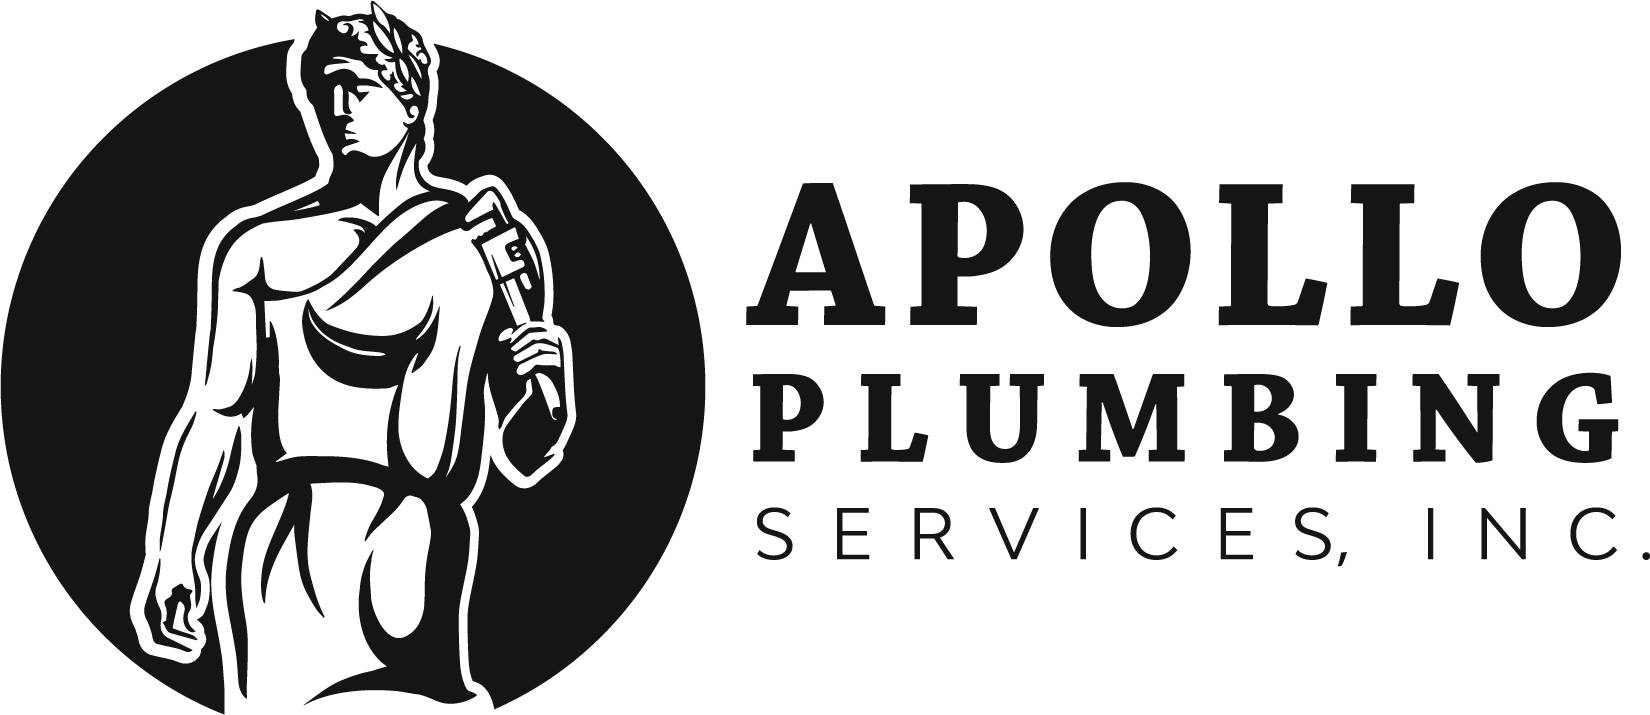 Apollo-Plumbing-Services-Logo.jpg